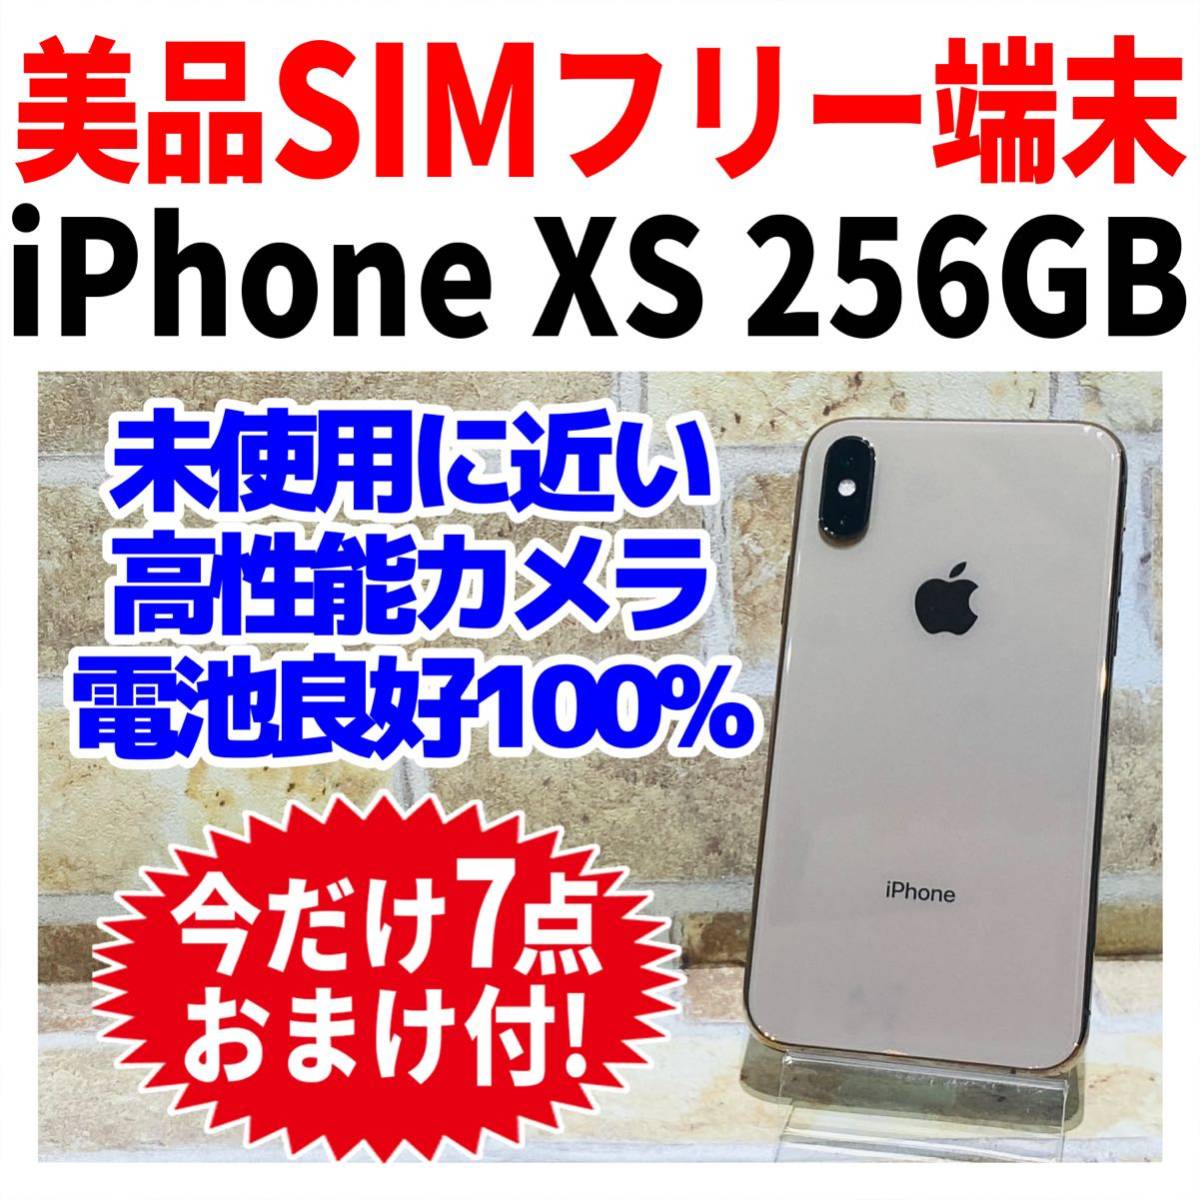 スマートフォン/携帯電話 スマートフォン本体 iPhone Xs Gold 256 GB SIMフリー バッテリー残量100 